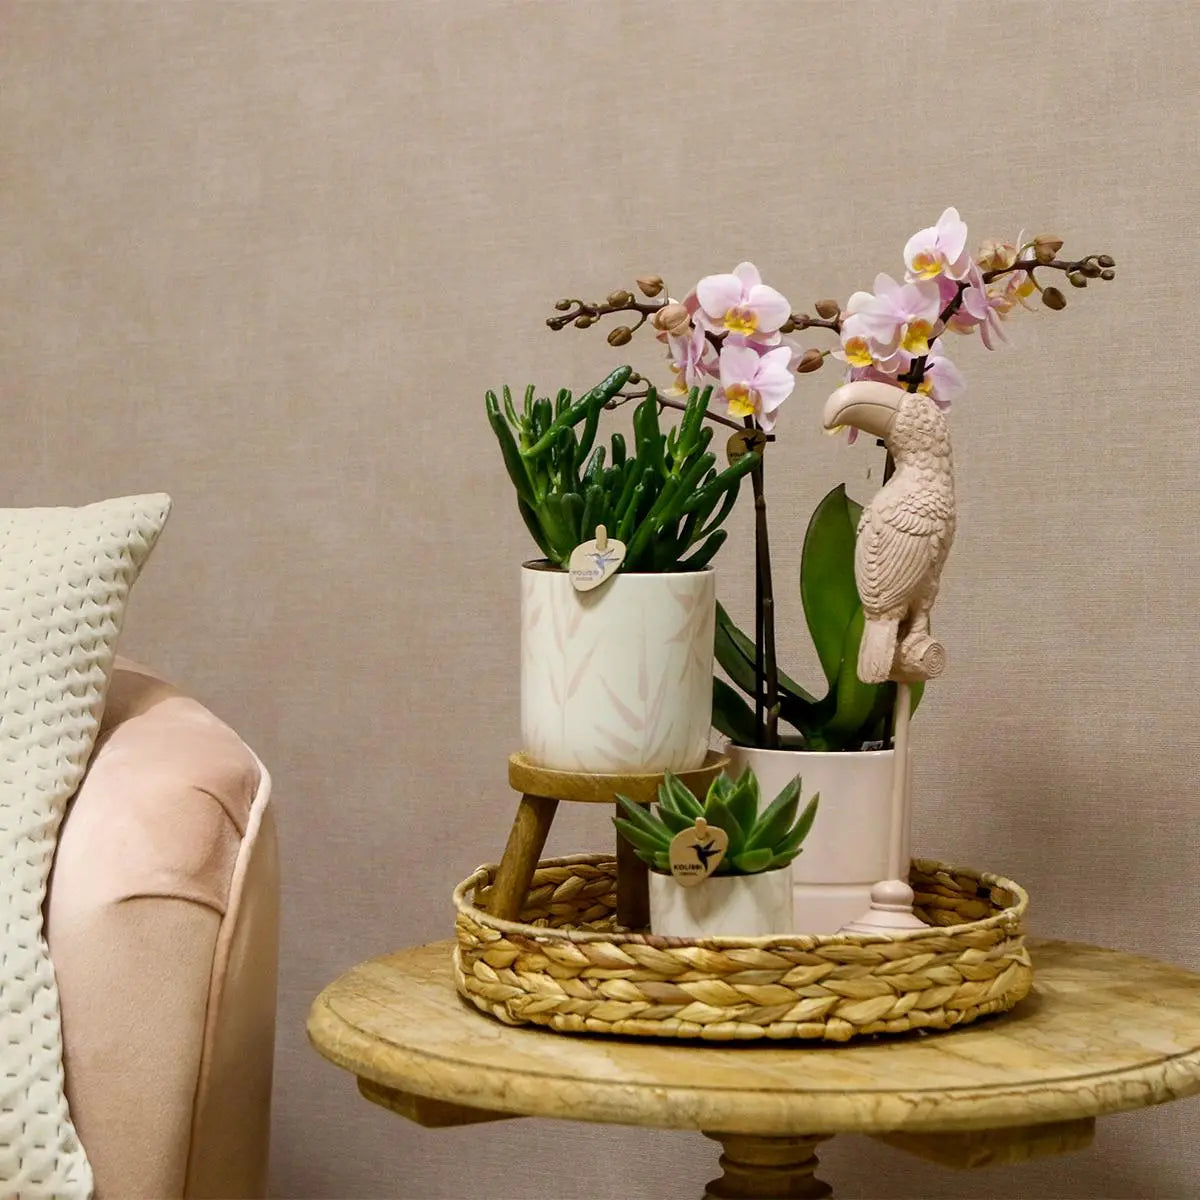 Kolibri Home | Leaf pot pink - Ø9cm Everspring